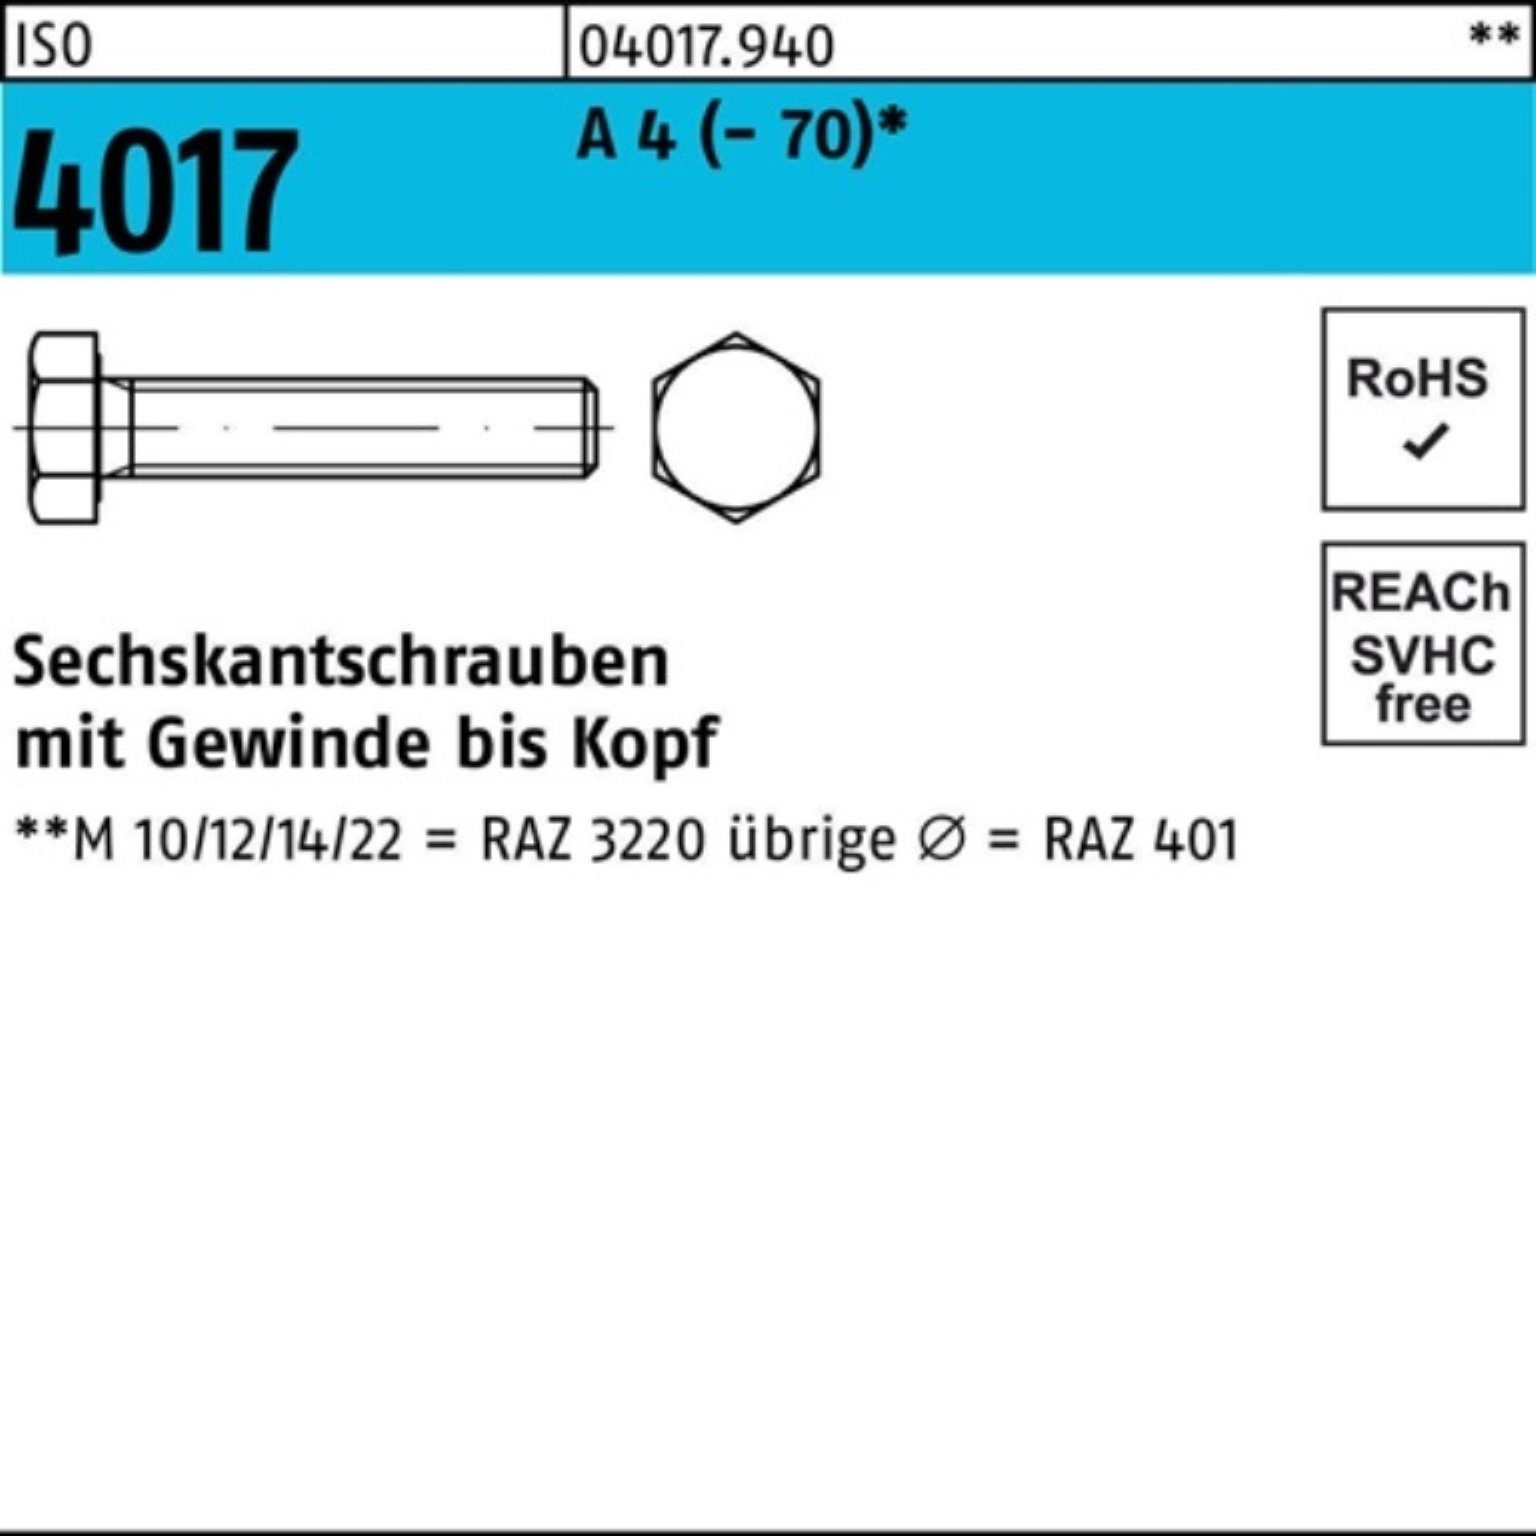 Bufab Sechskantschraube 100er Pack Sechskantschraube ISO 4017 VG M8x 45 A 4 (70) 100 Stück